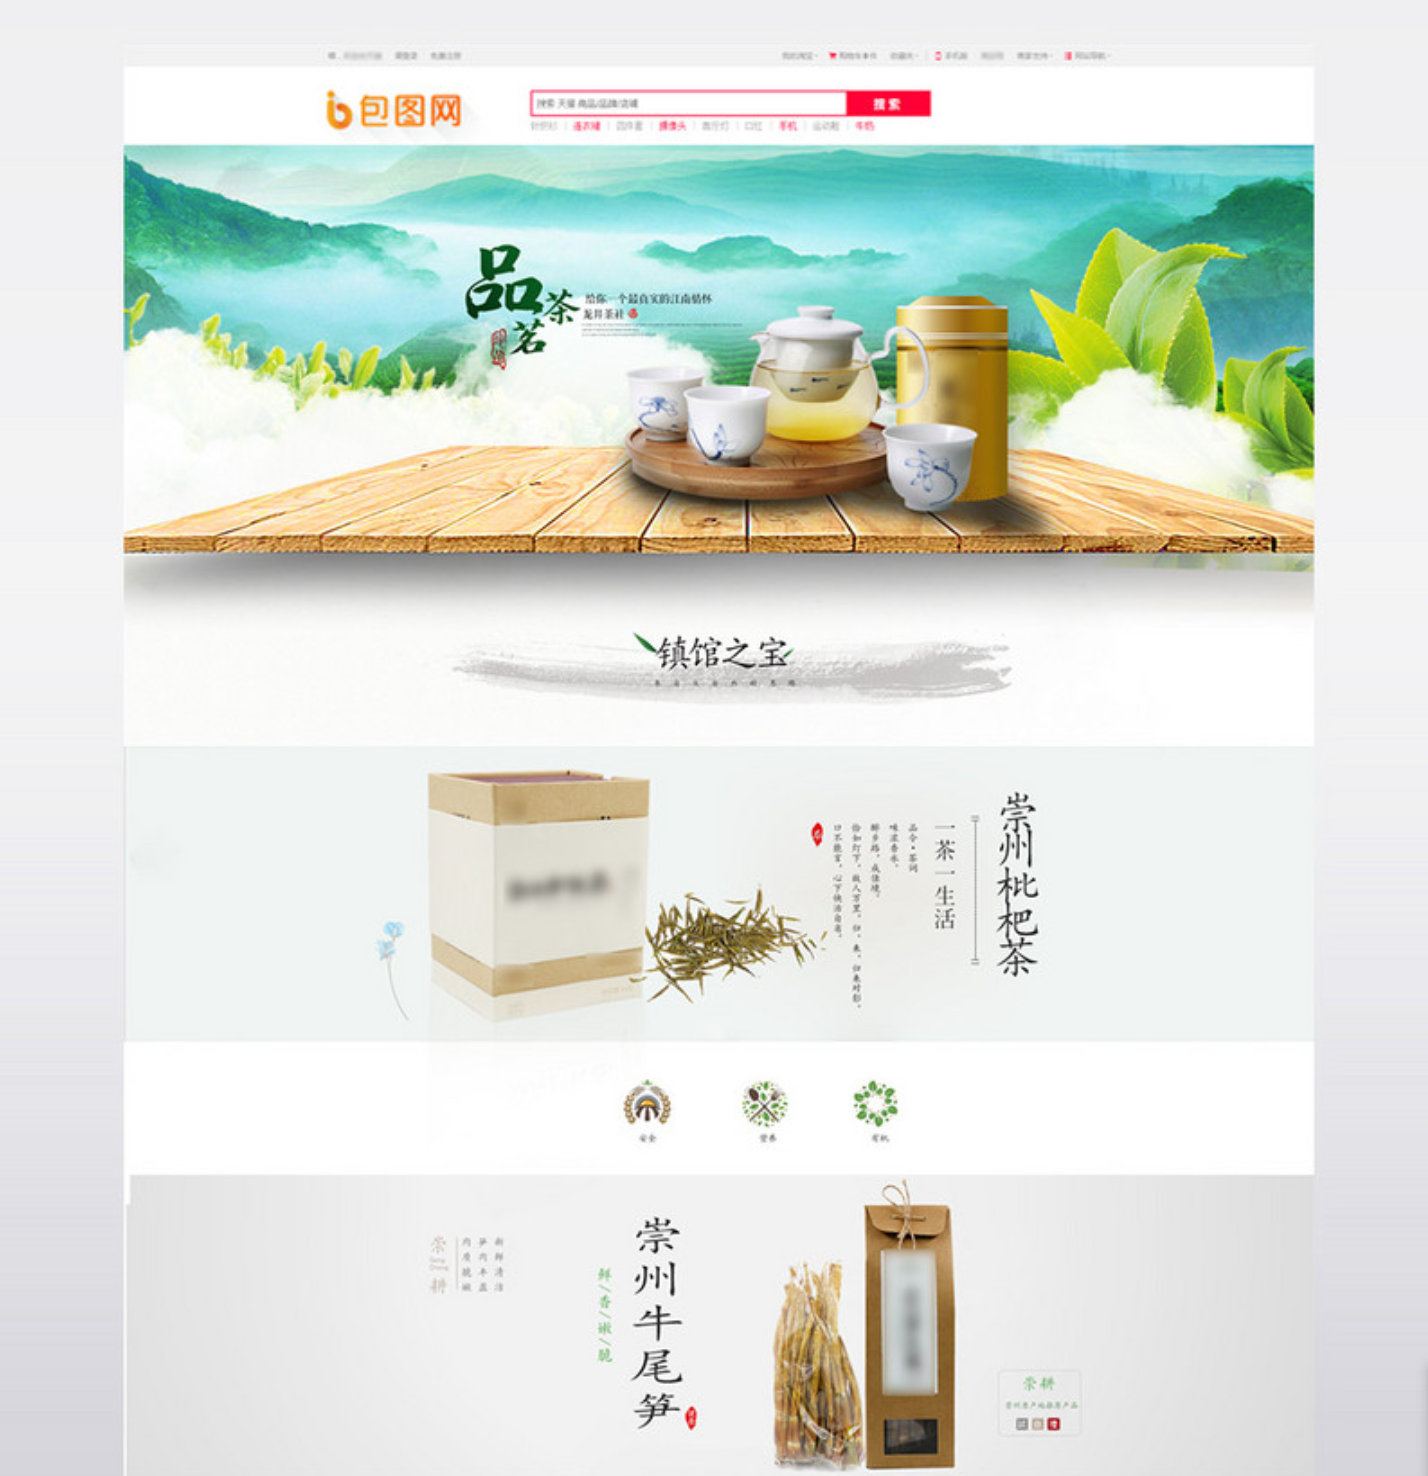 pikbest_com/e-commerce/fresh-green-spring-new-tea_600517.html